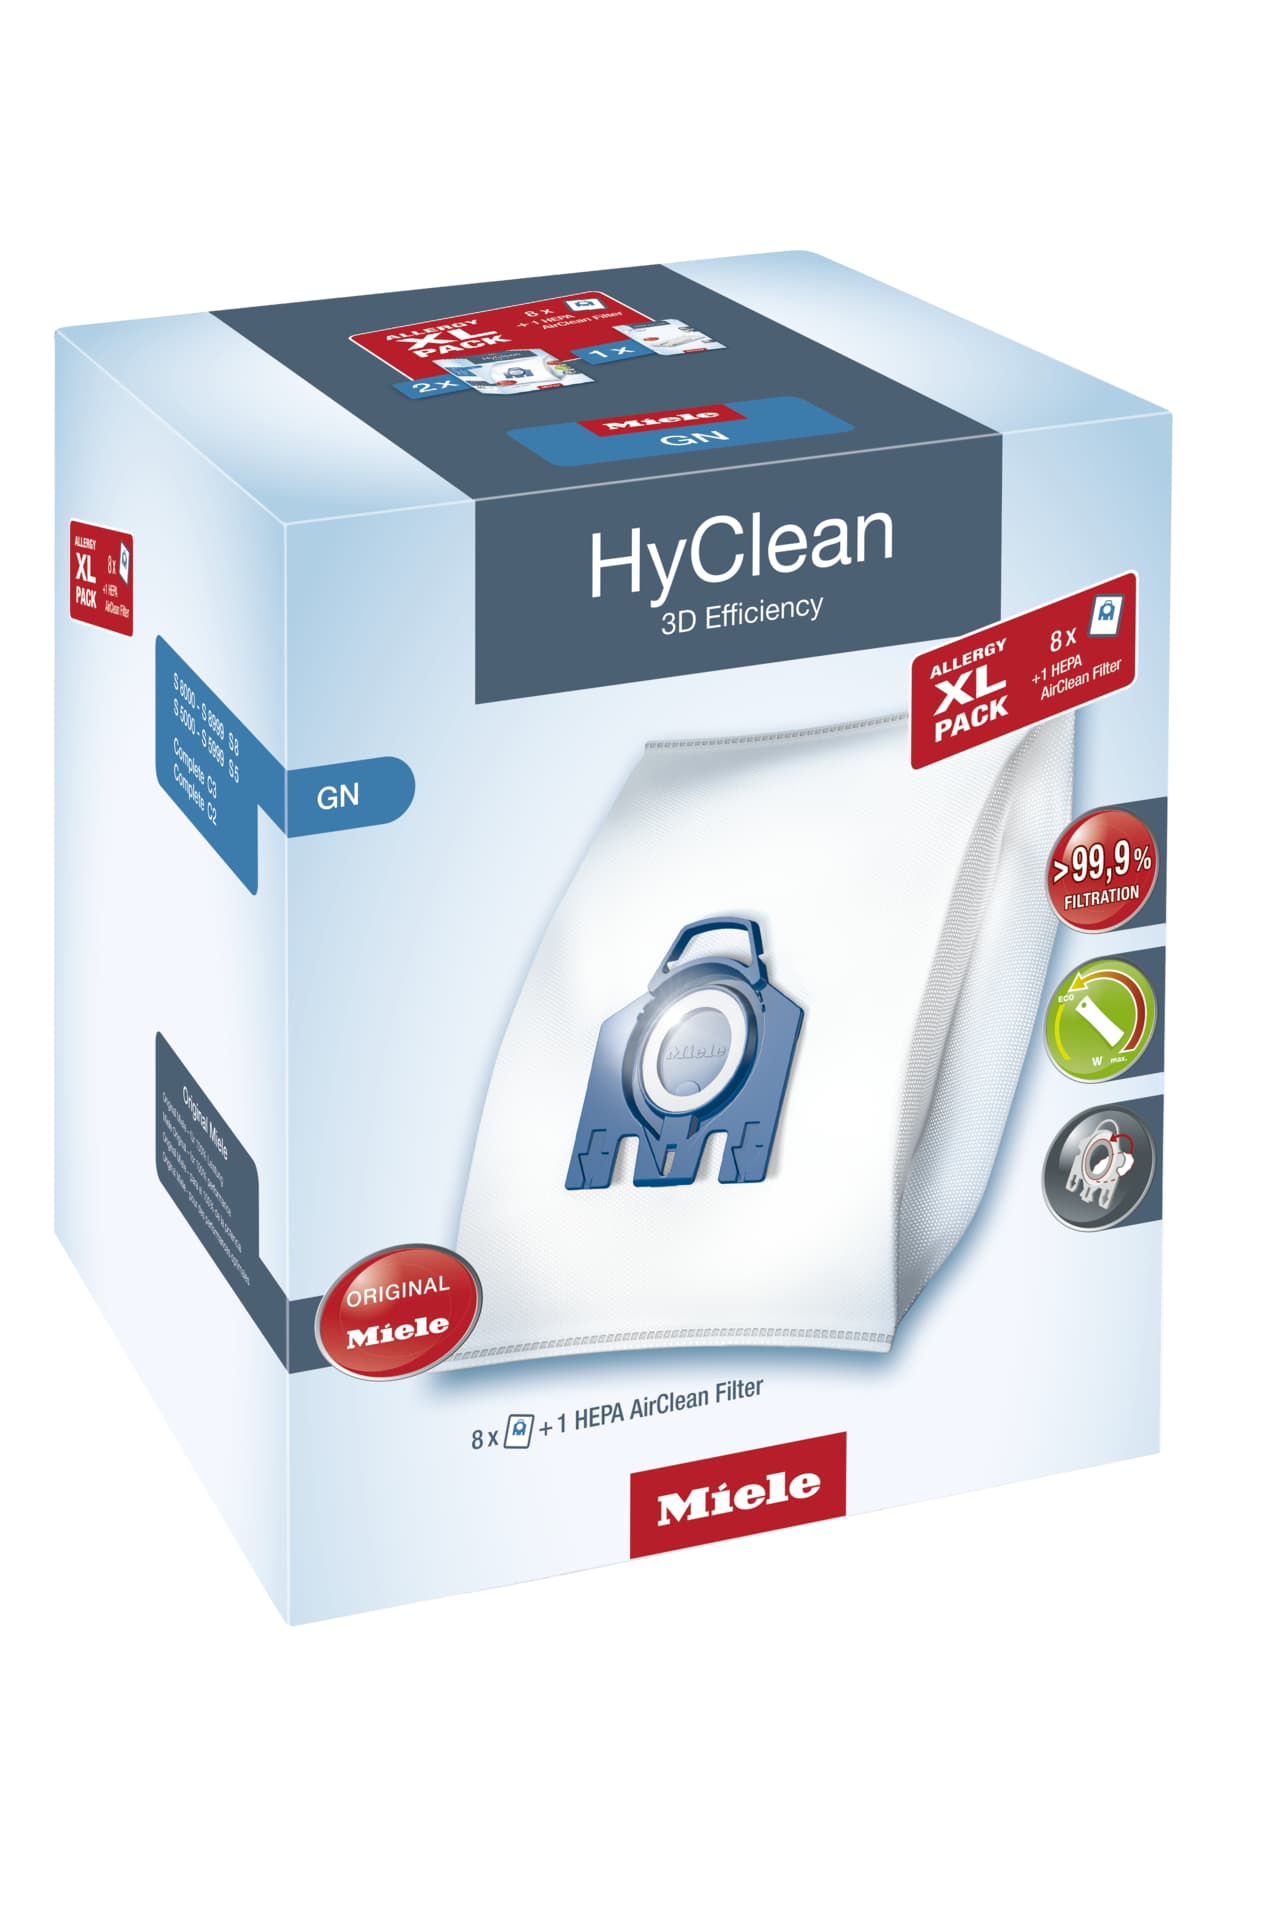 Miele Zubehör Staubsauger GN Allergy XL HyClean 3D Allergy XL-Pack HyClean 3D Efficiency GN 8 Staubsaugerbeutel und 1 HEPA AirClean Filter 